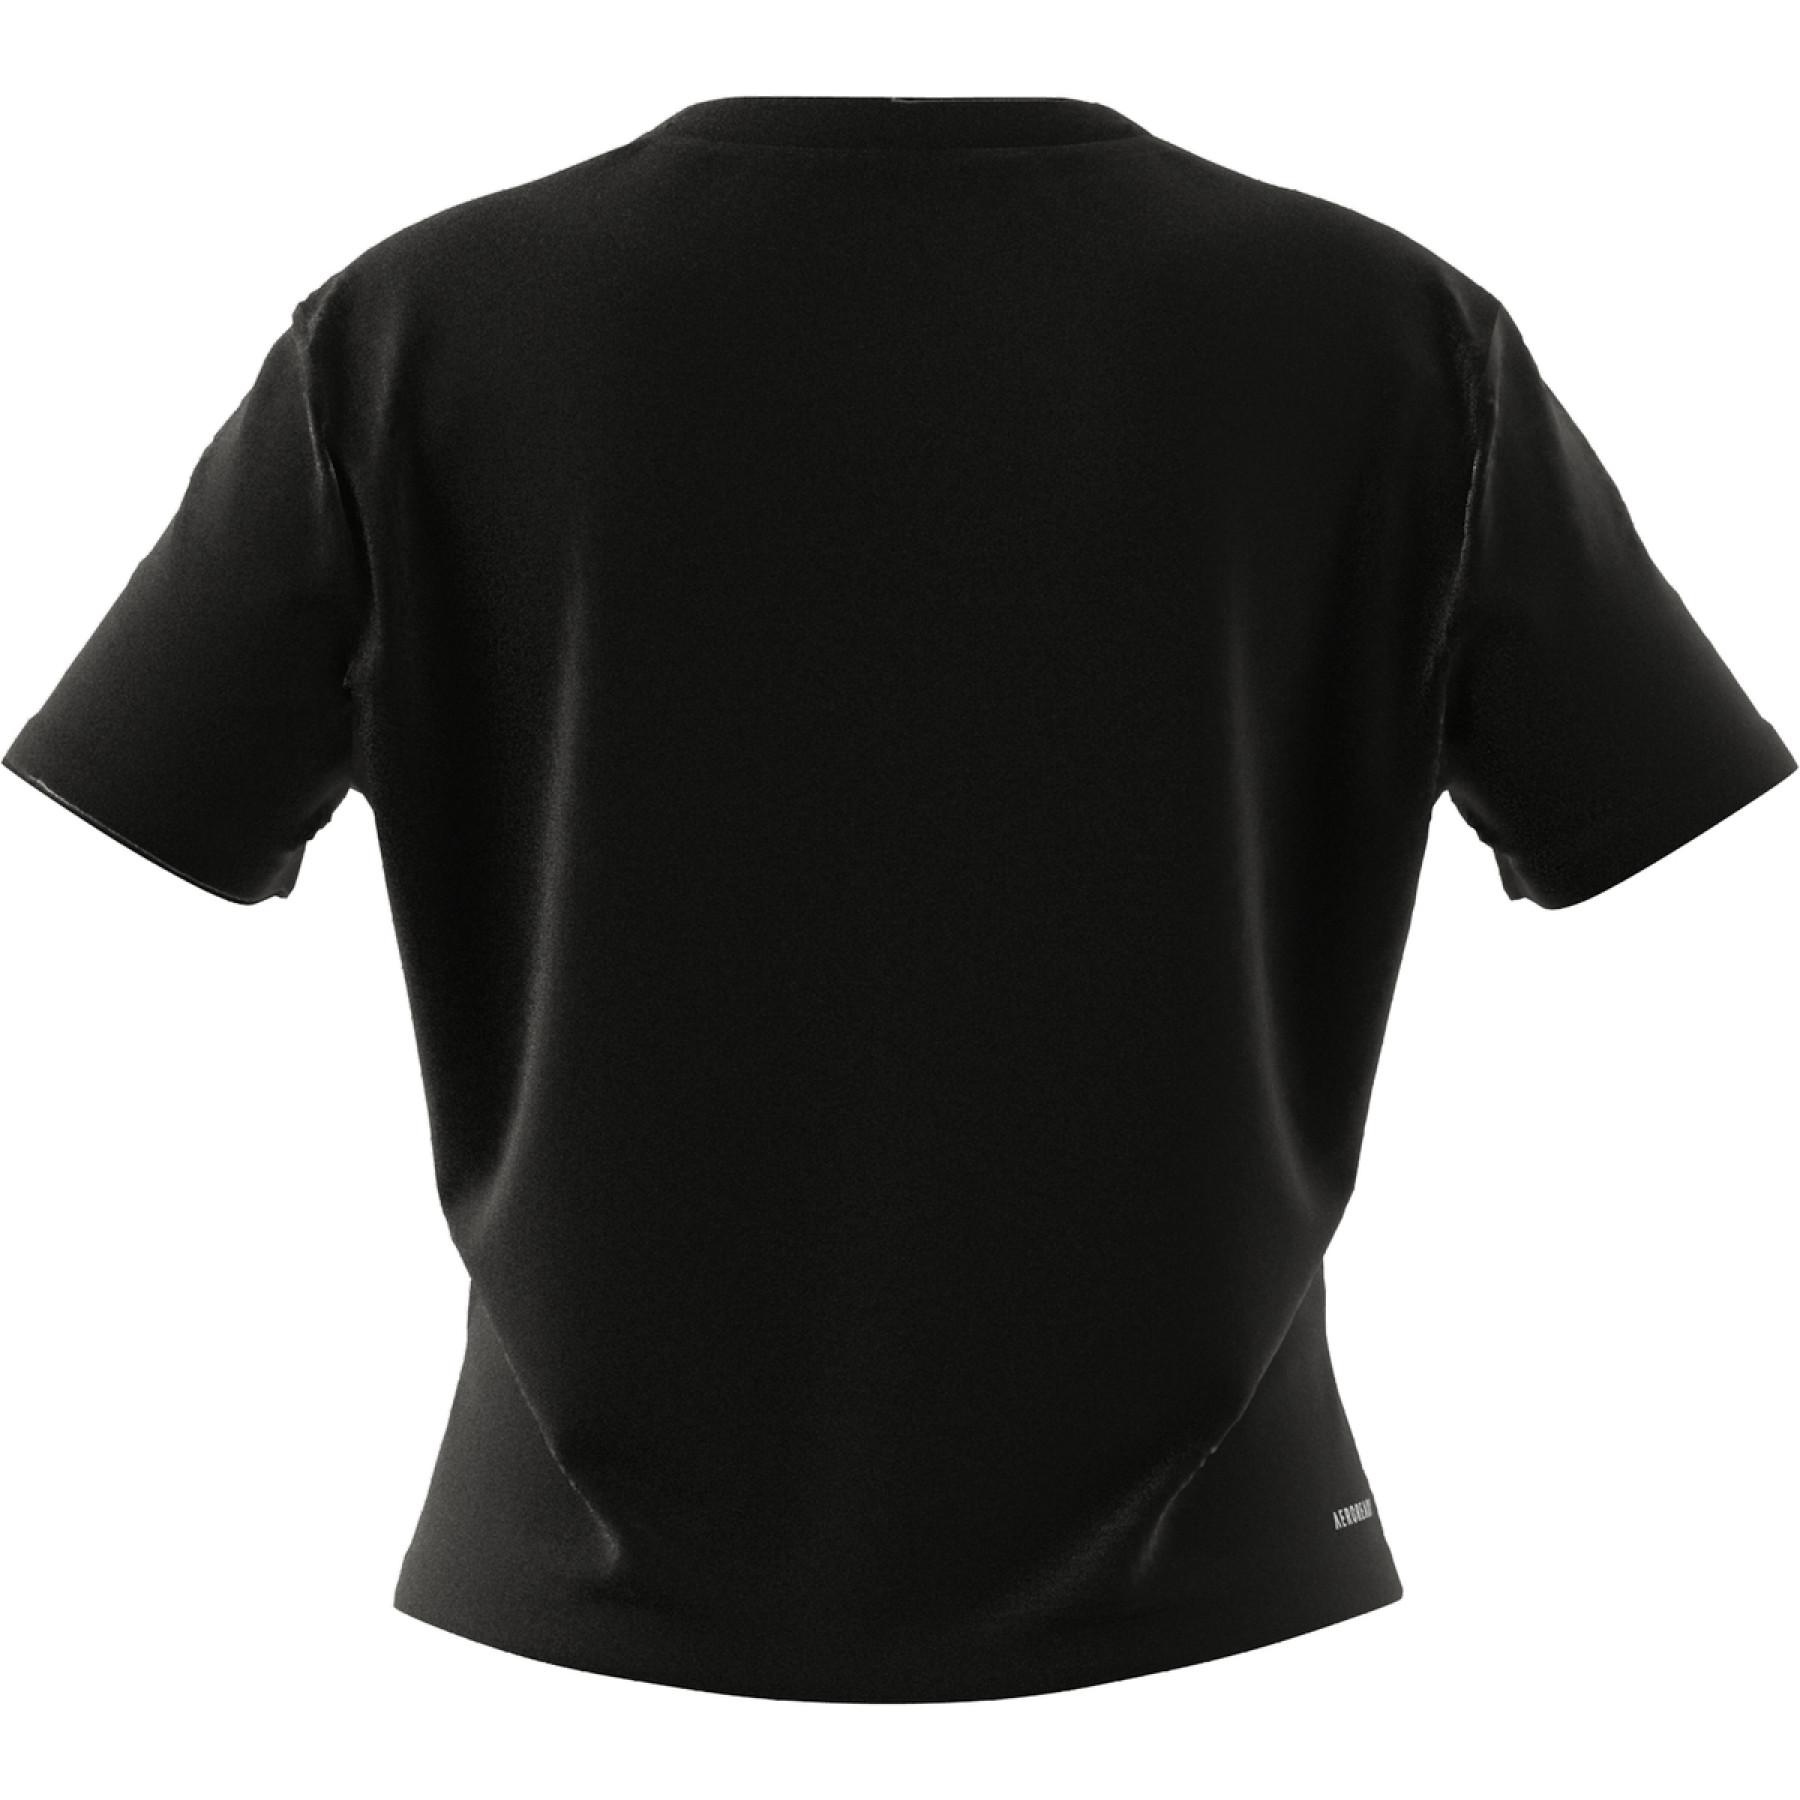 Kort T-shirt för kvinnor adidas Aeroready Designed 2 Move Logo Sport